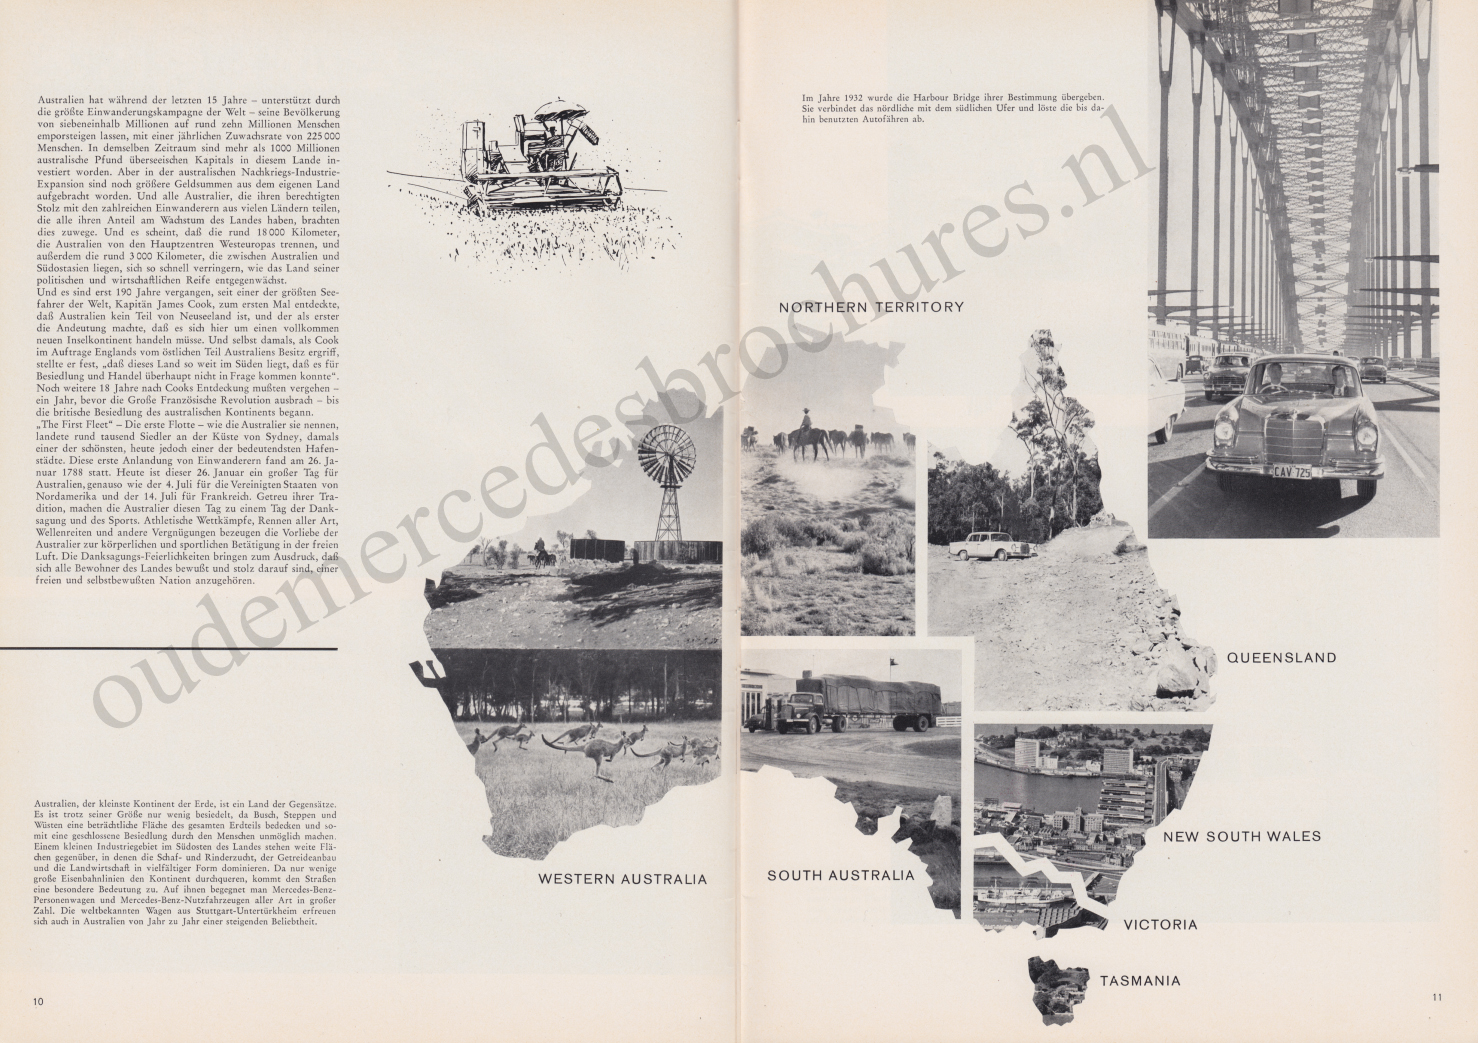 mercedes - (REVISTA): Periódico In aller welt n.º 44 - Mercedes-Benz no mundo - 1960 - multilingue 006